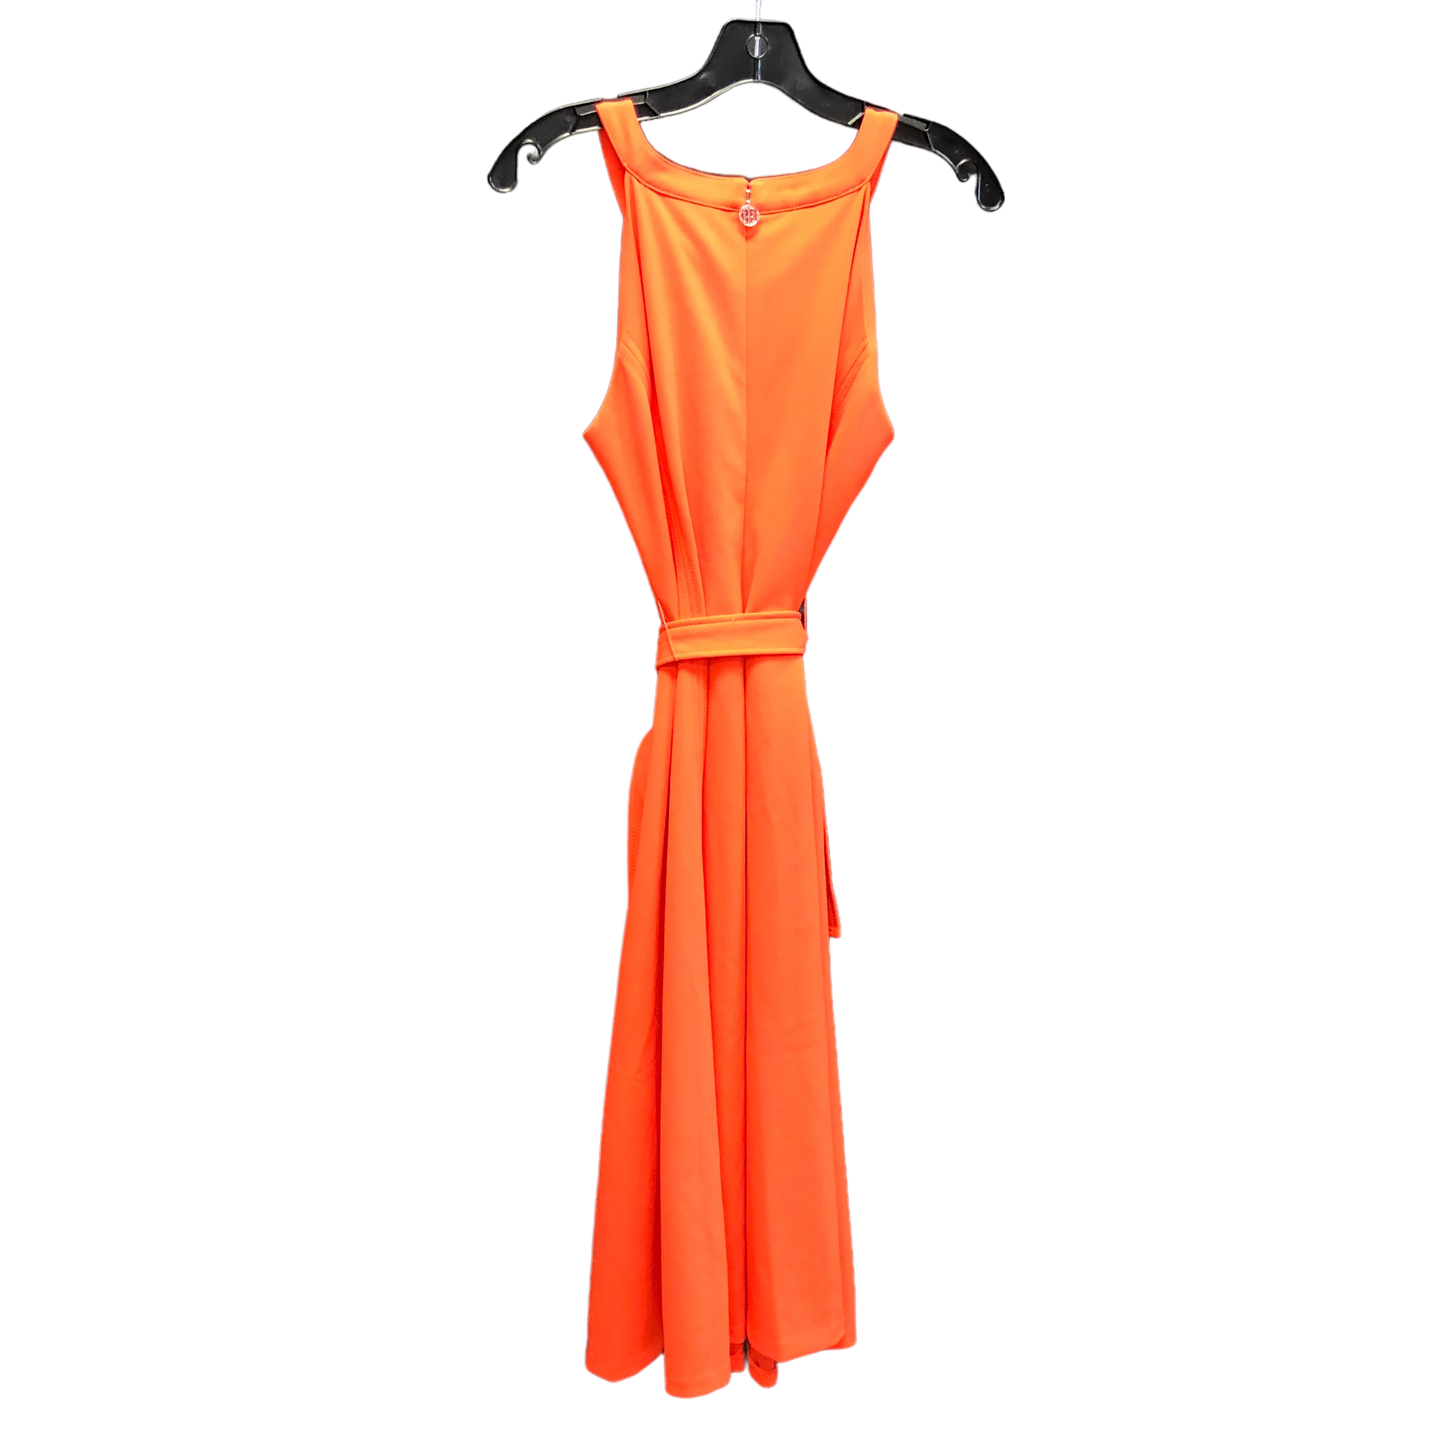 Orange Dress Casual Short Tommy Hilfiger, Size 8